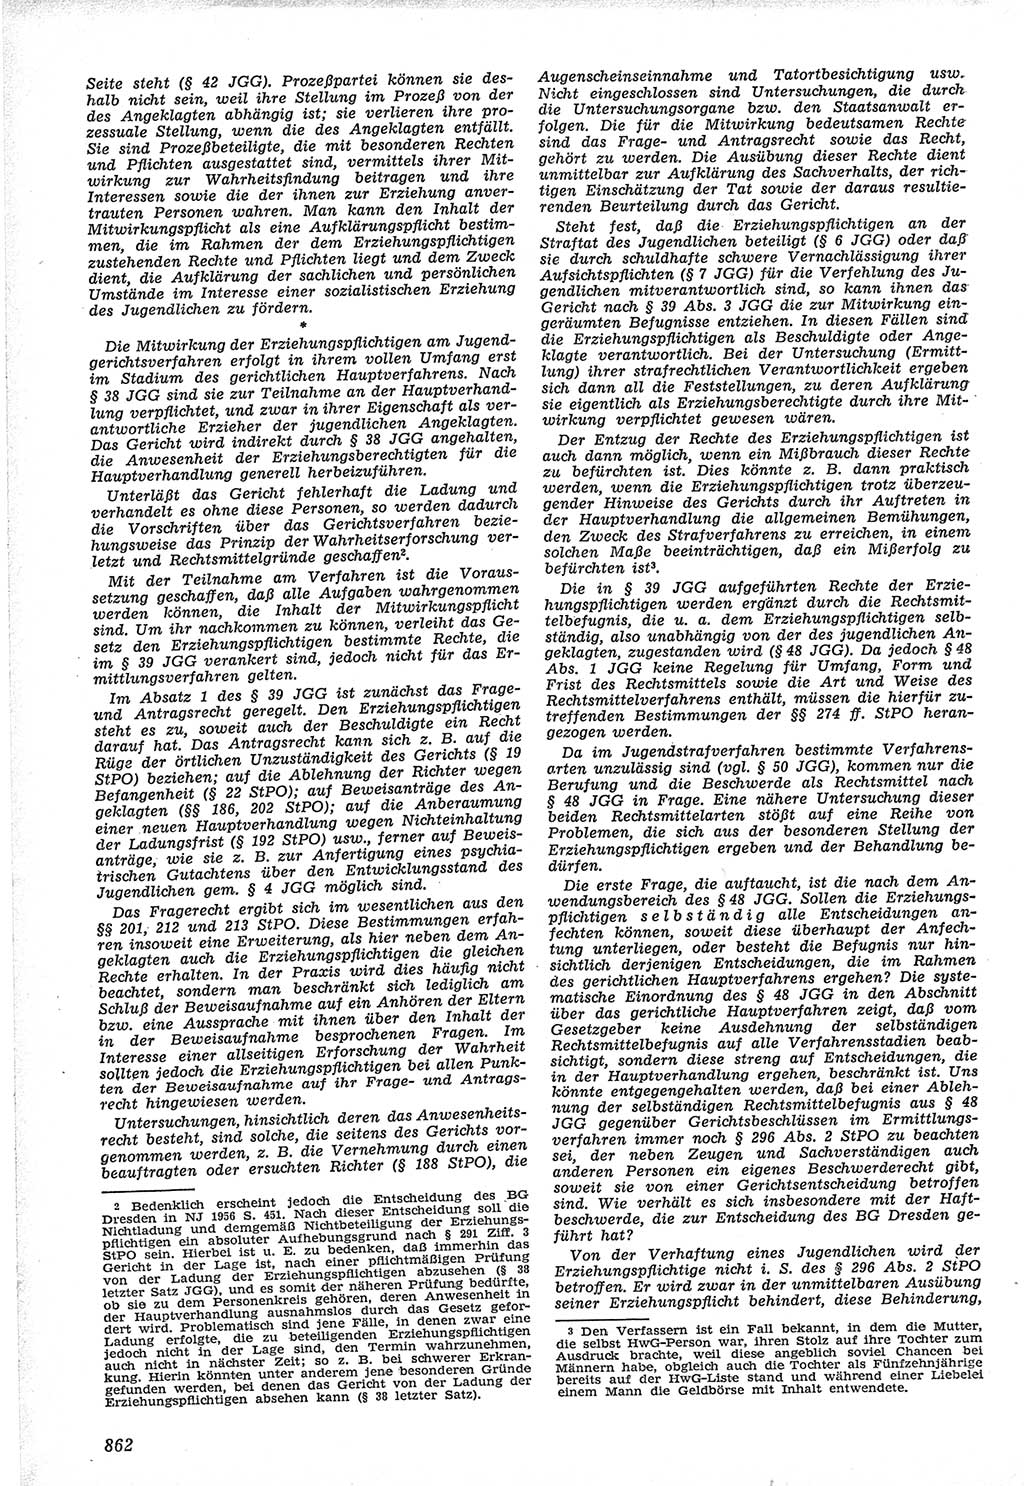 Neue Justiz (NJ), Zeitschrift für Recht und Rechtswissenschaft [Deutsche Demokratische Republik (DDR)], 12. Jahrgang 1958, Seite 862 (NJ DDR 1958, S. 862)